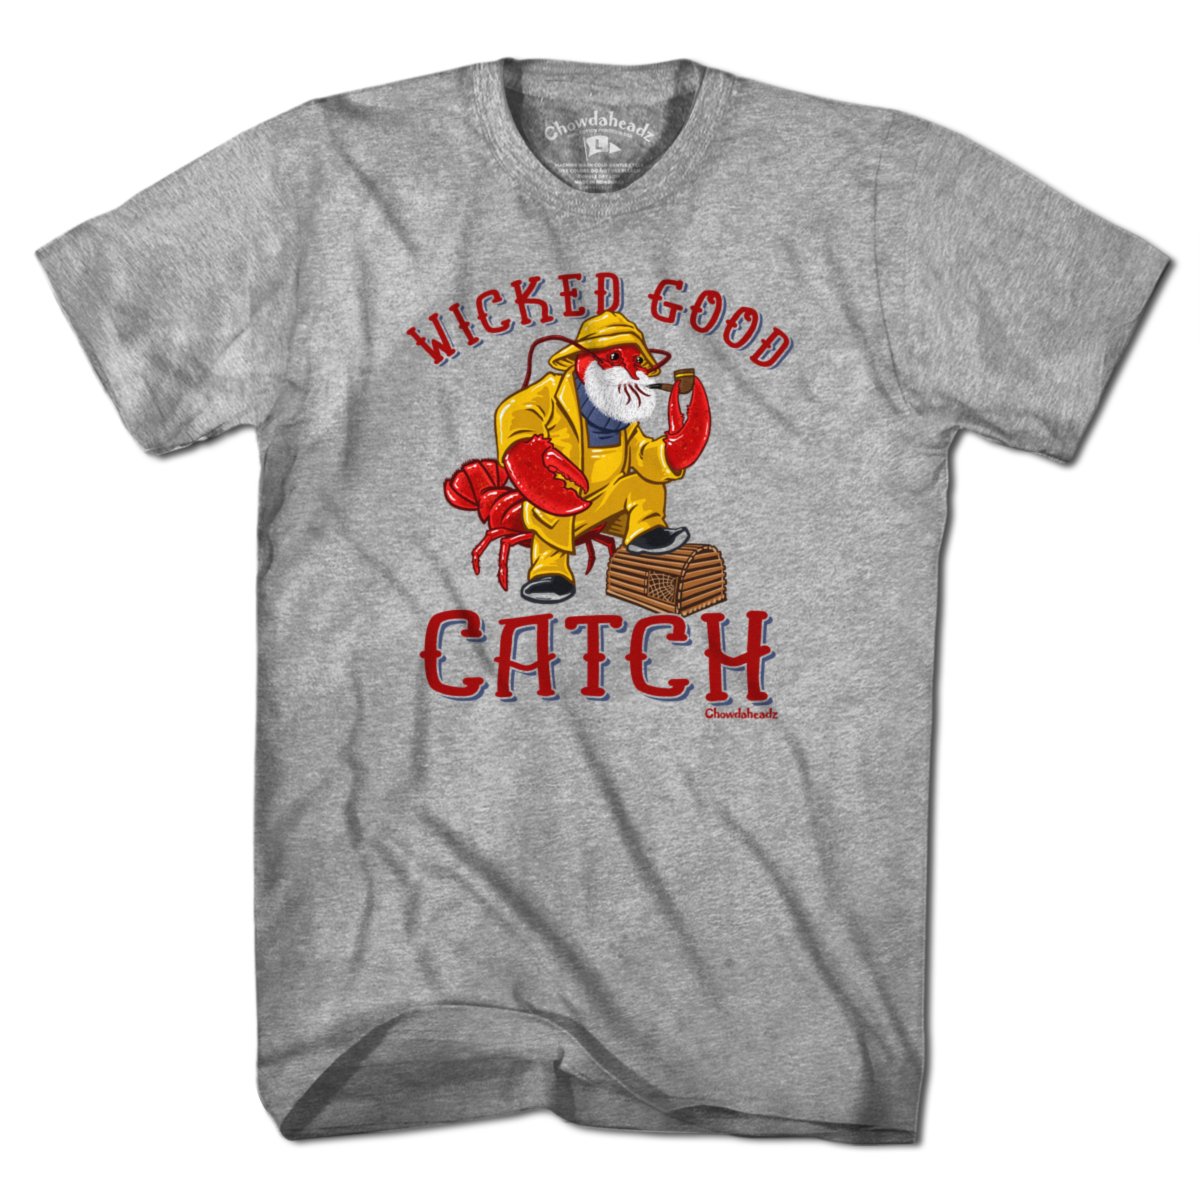 Wicked Good Catch Lobstah T-Shirt - Chowdaheadz